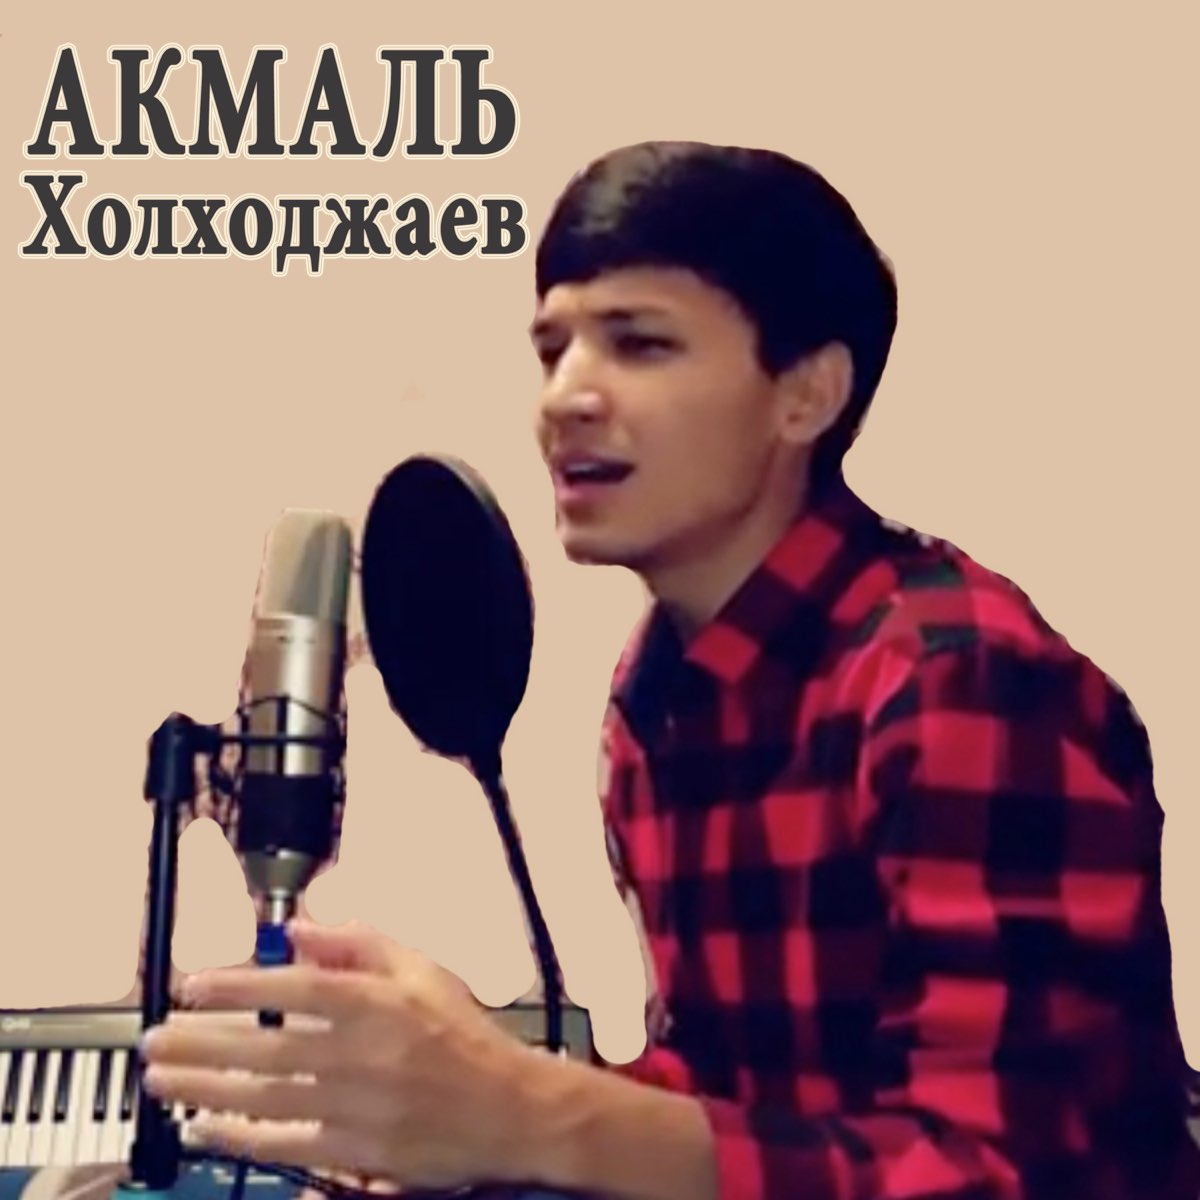 Акмаль биография сколько лет. Akmal певец. Акмал Ходжаниязов. Акмал Холхужаев. Akmal' Холходжаев.